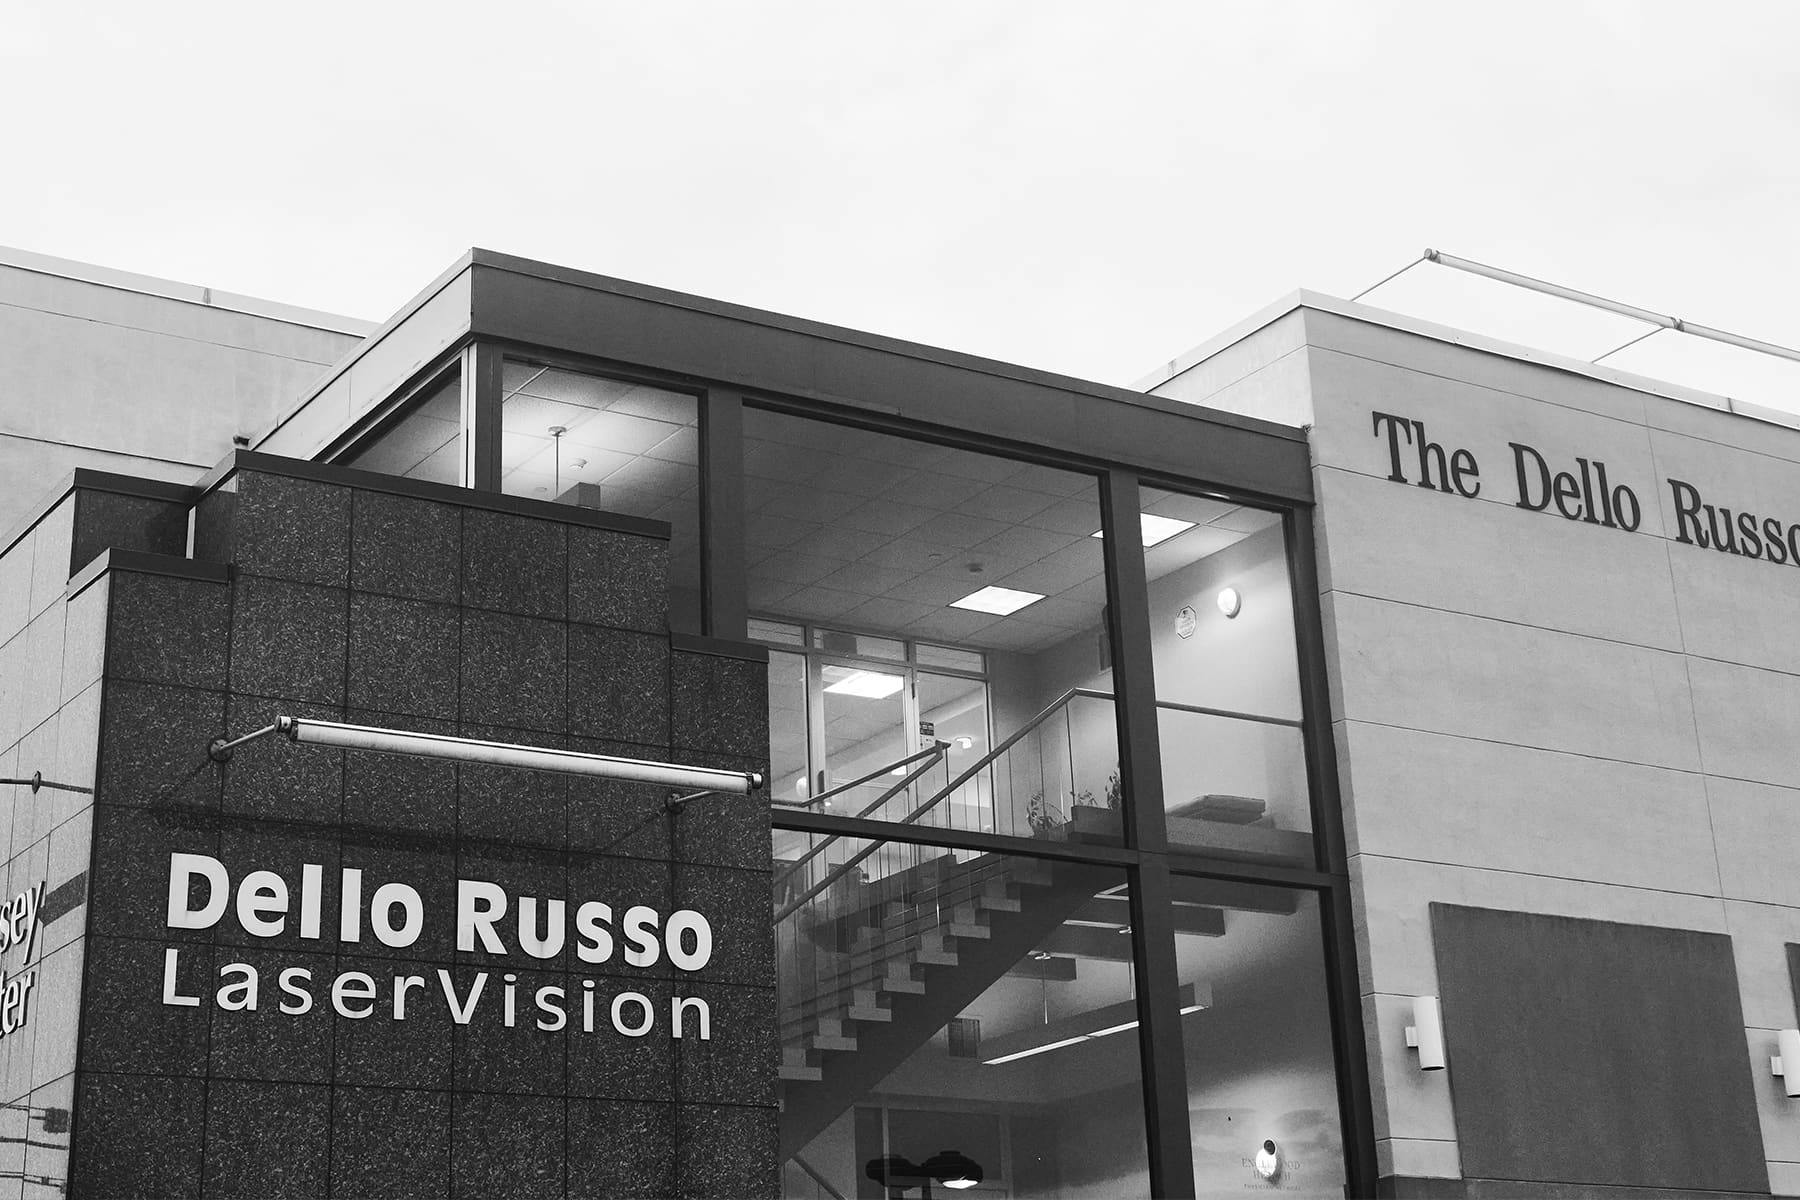 Dello Russo Laser Vision building